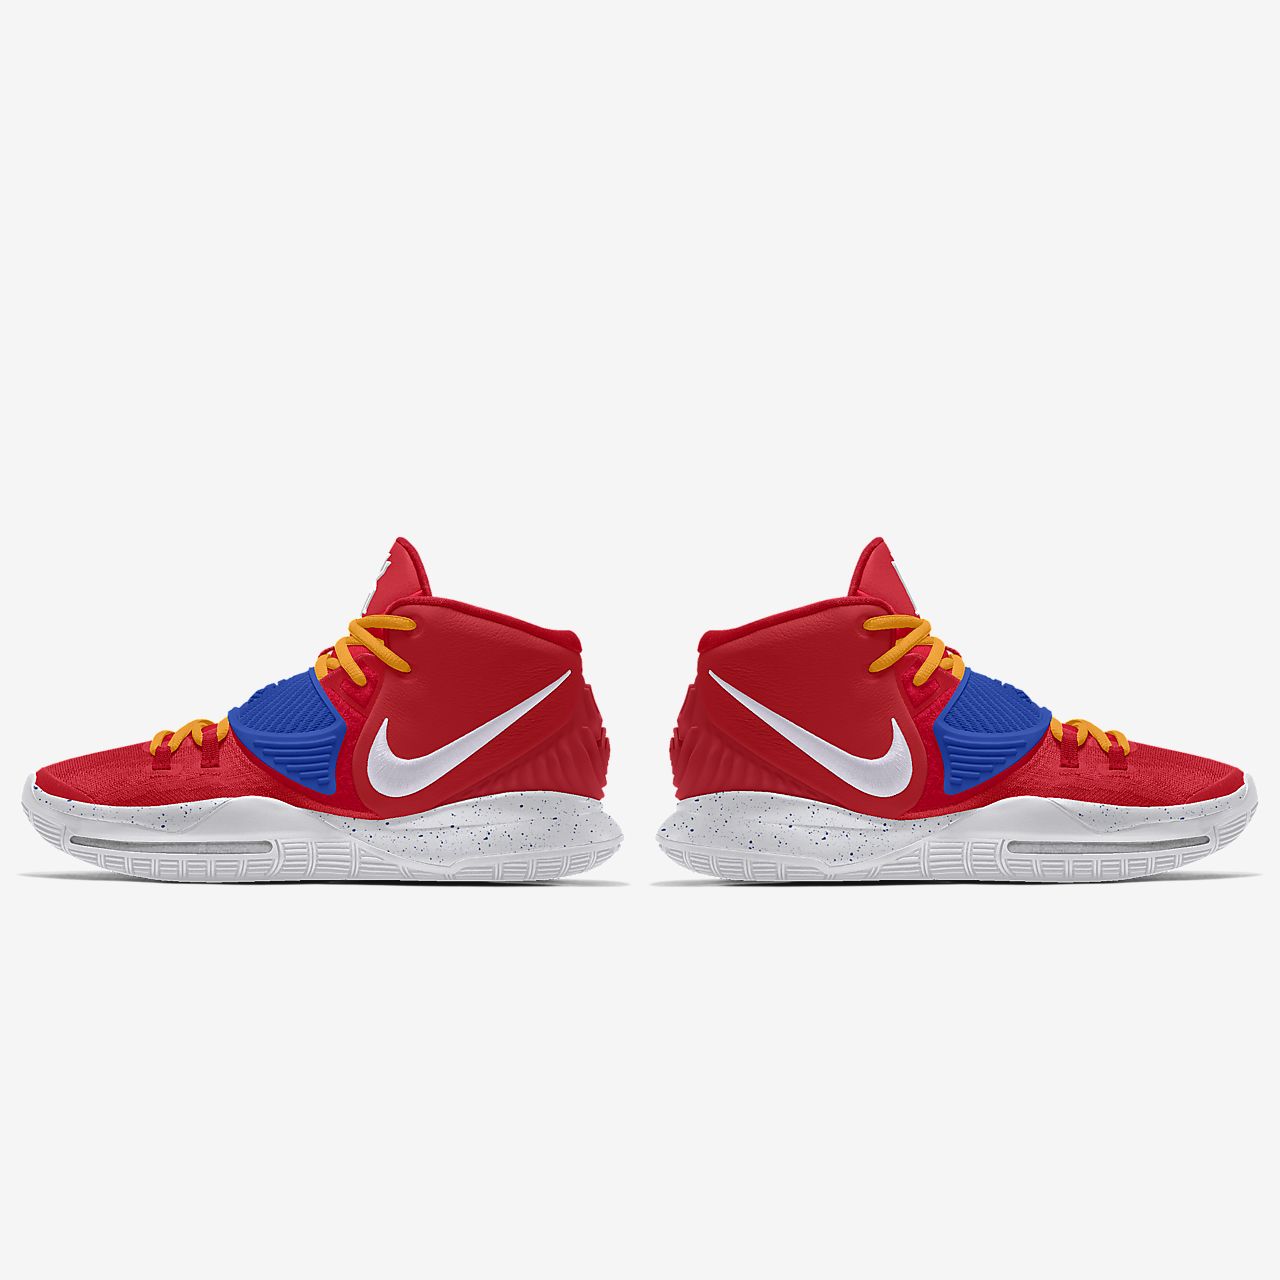 Custom Basketball Shoe.Online store 